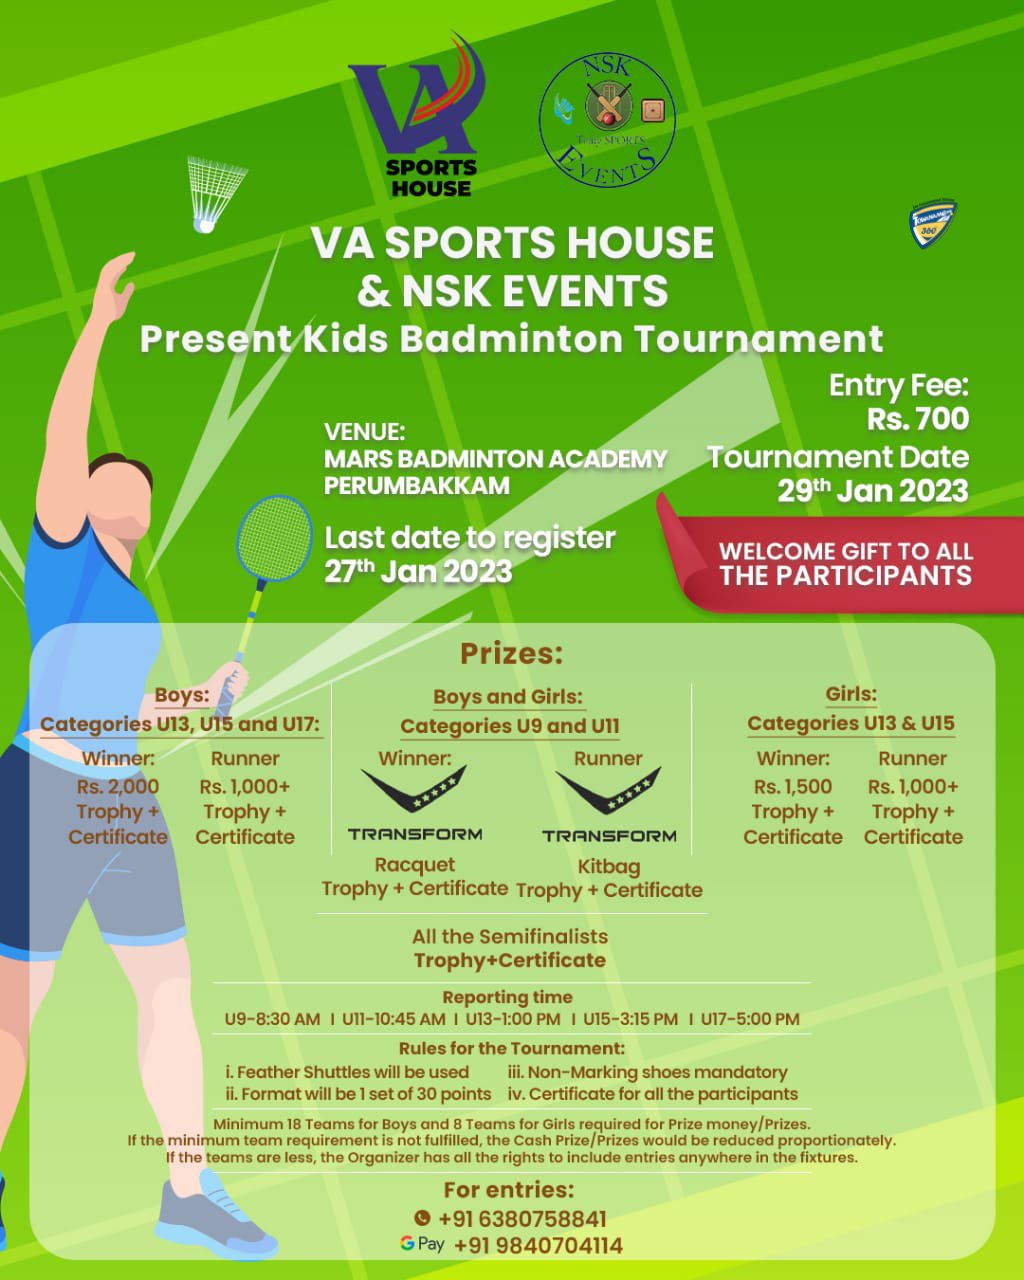 Kids Badminton Tournament in Chennai